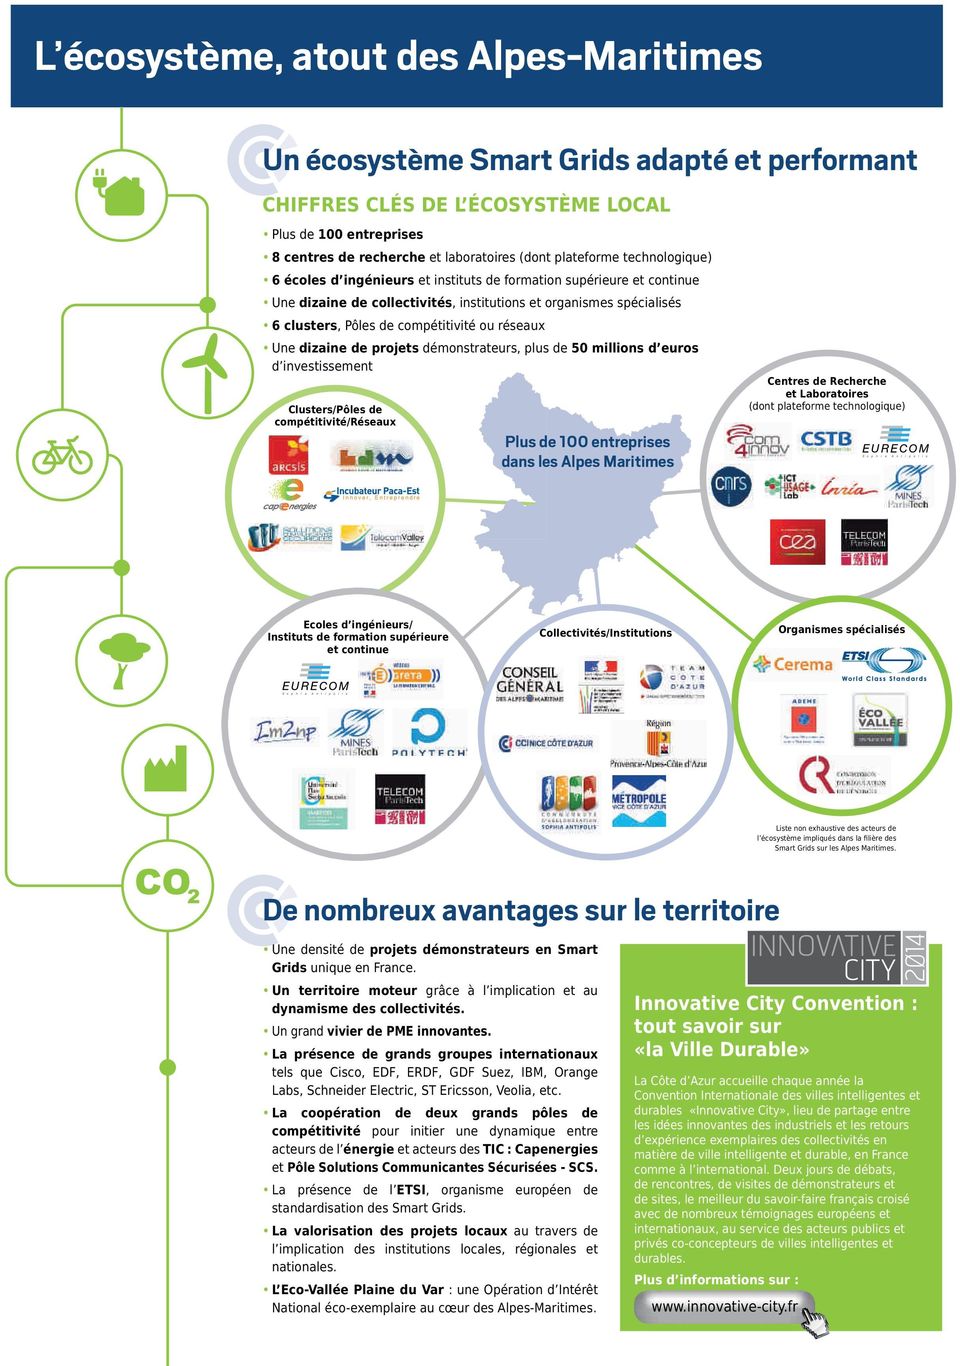 compétitivité ou réseaux Une dizaine de projets démonstrateurs, plus de 50 millions d euros d investissement Clusters/Pôles de compétitivité/réseaux Plus de 100 entreprises dans les Alpes Maritimes